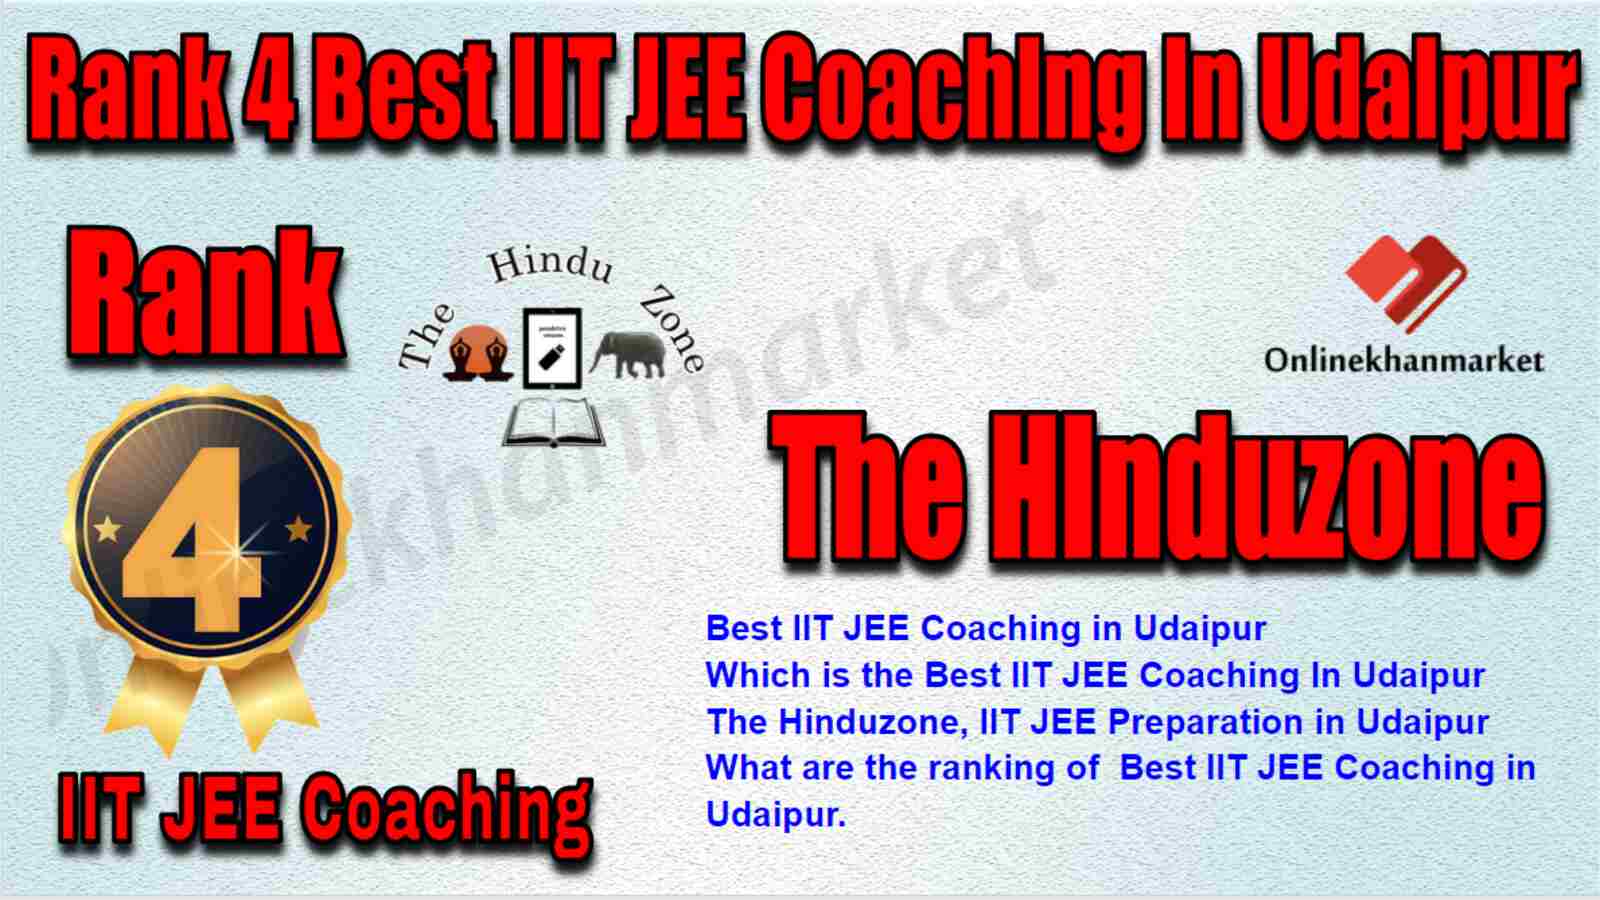 Rank 4 Best IIT JEE Coaching in Udaipur